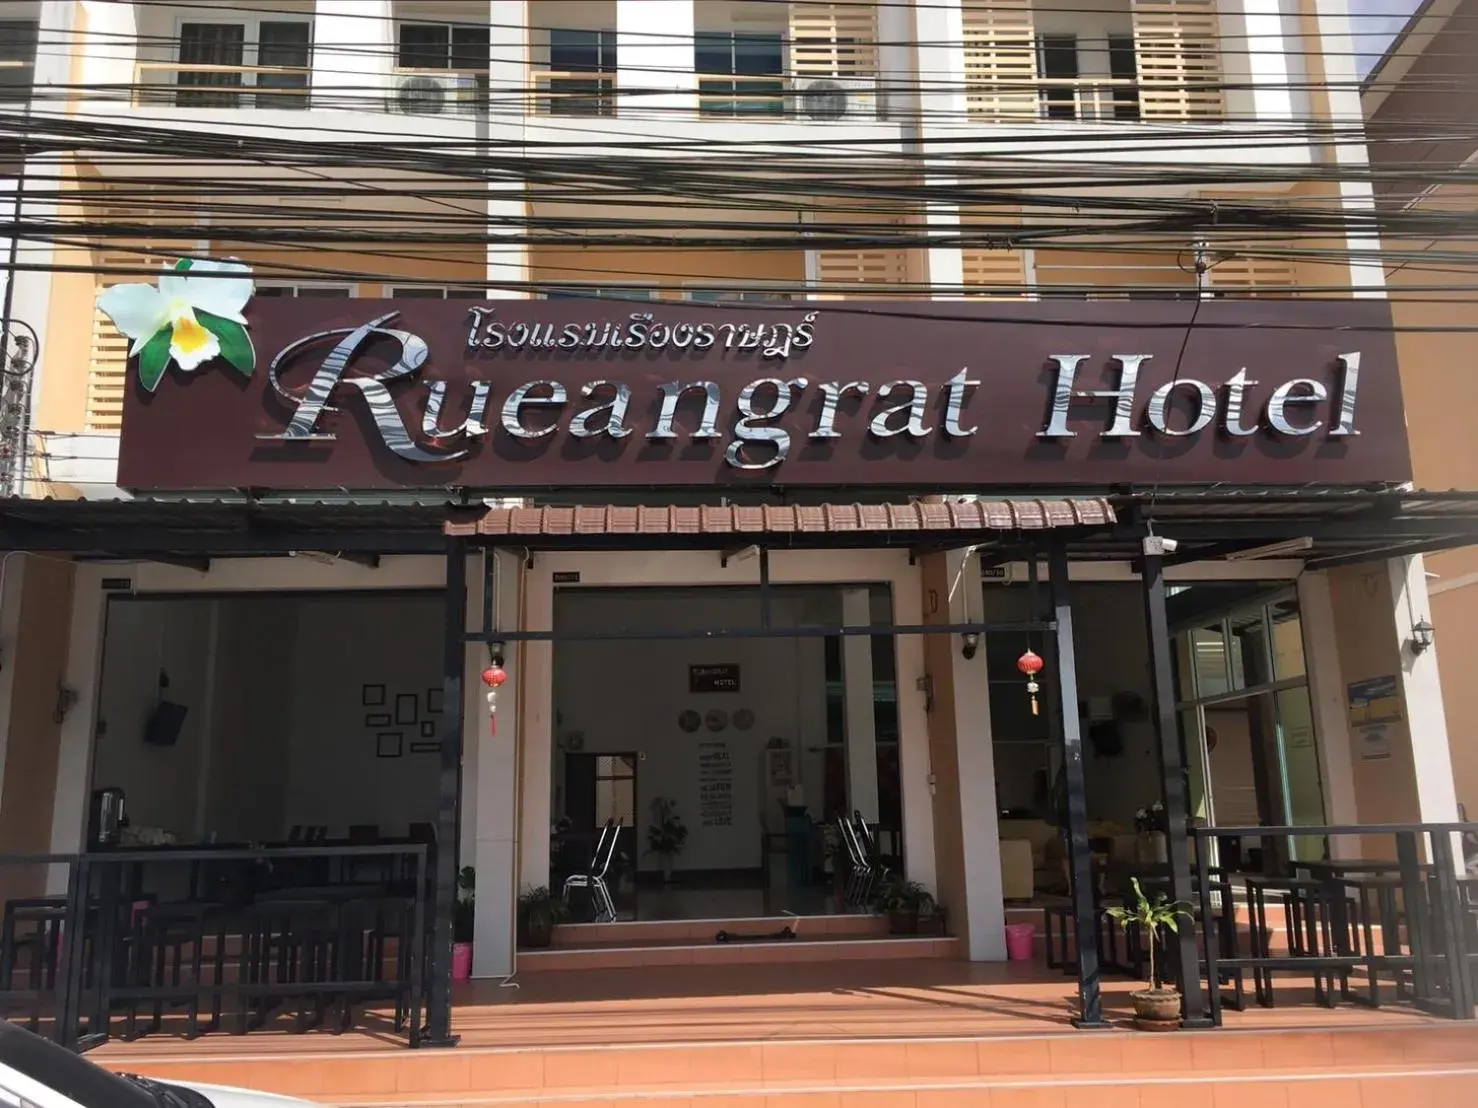 Facade/entrance in Rueangrat Hotel